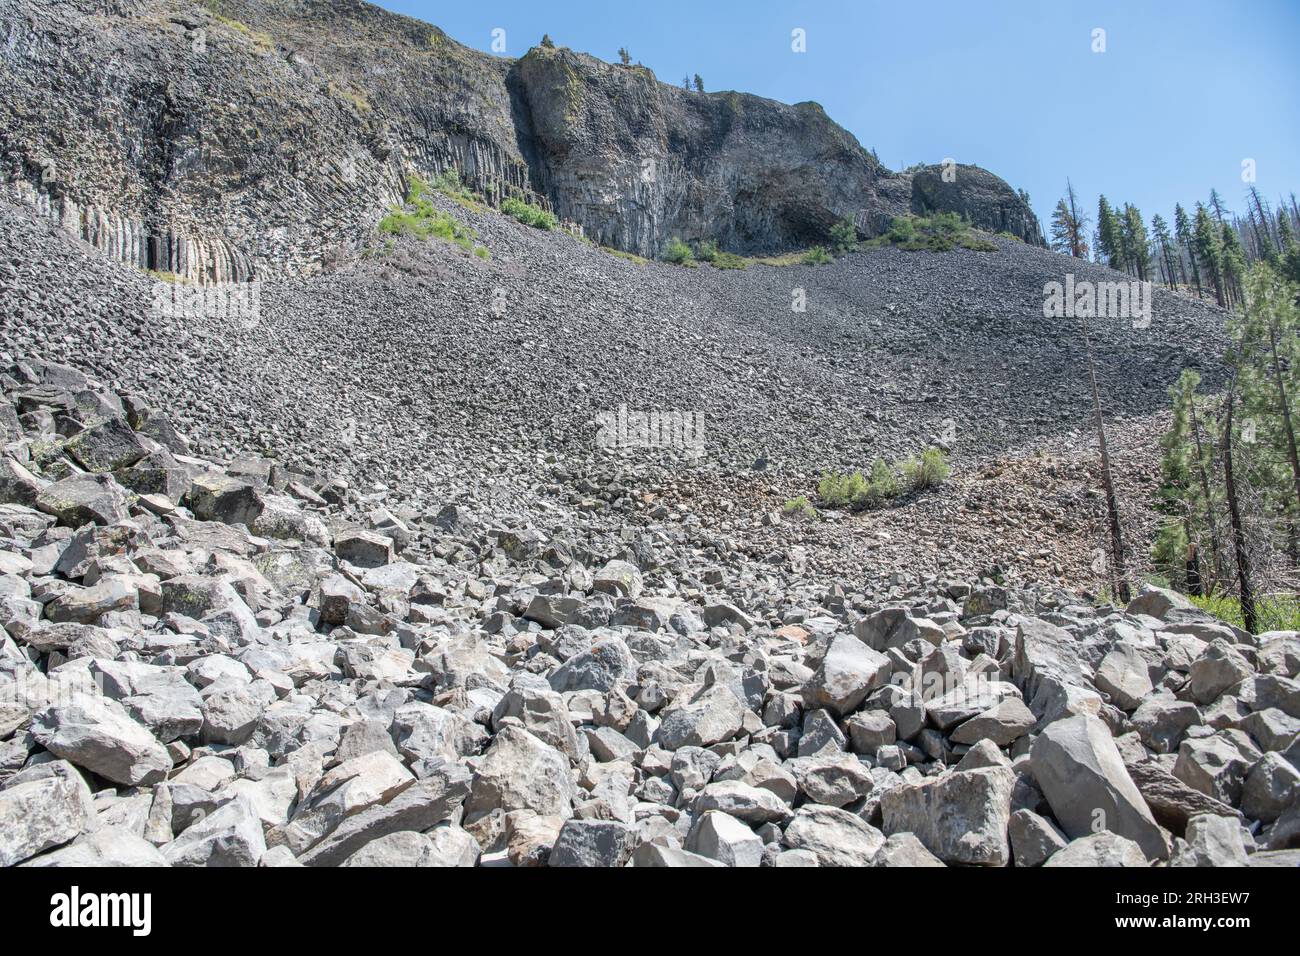 Basalt-Felsformationen in den Säulen der Giants, ein ungewöhnliches geologisches Merkmal des Sonora Pass in den Sierra Nevada Mountains von Kalifornien. Stockfoto